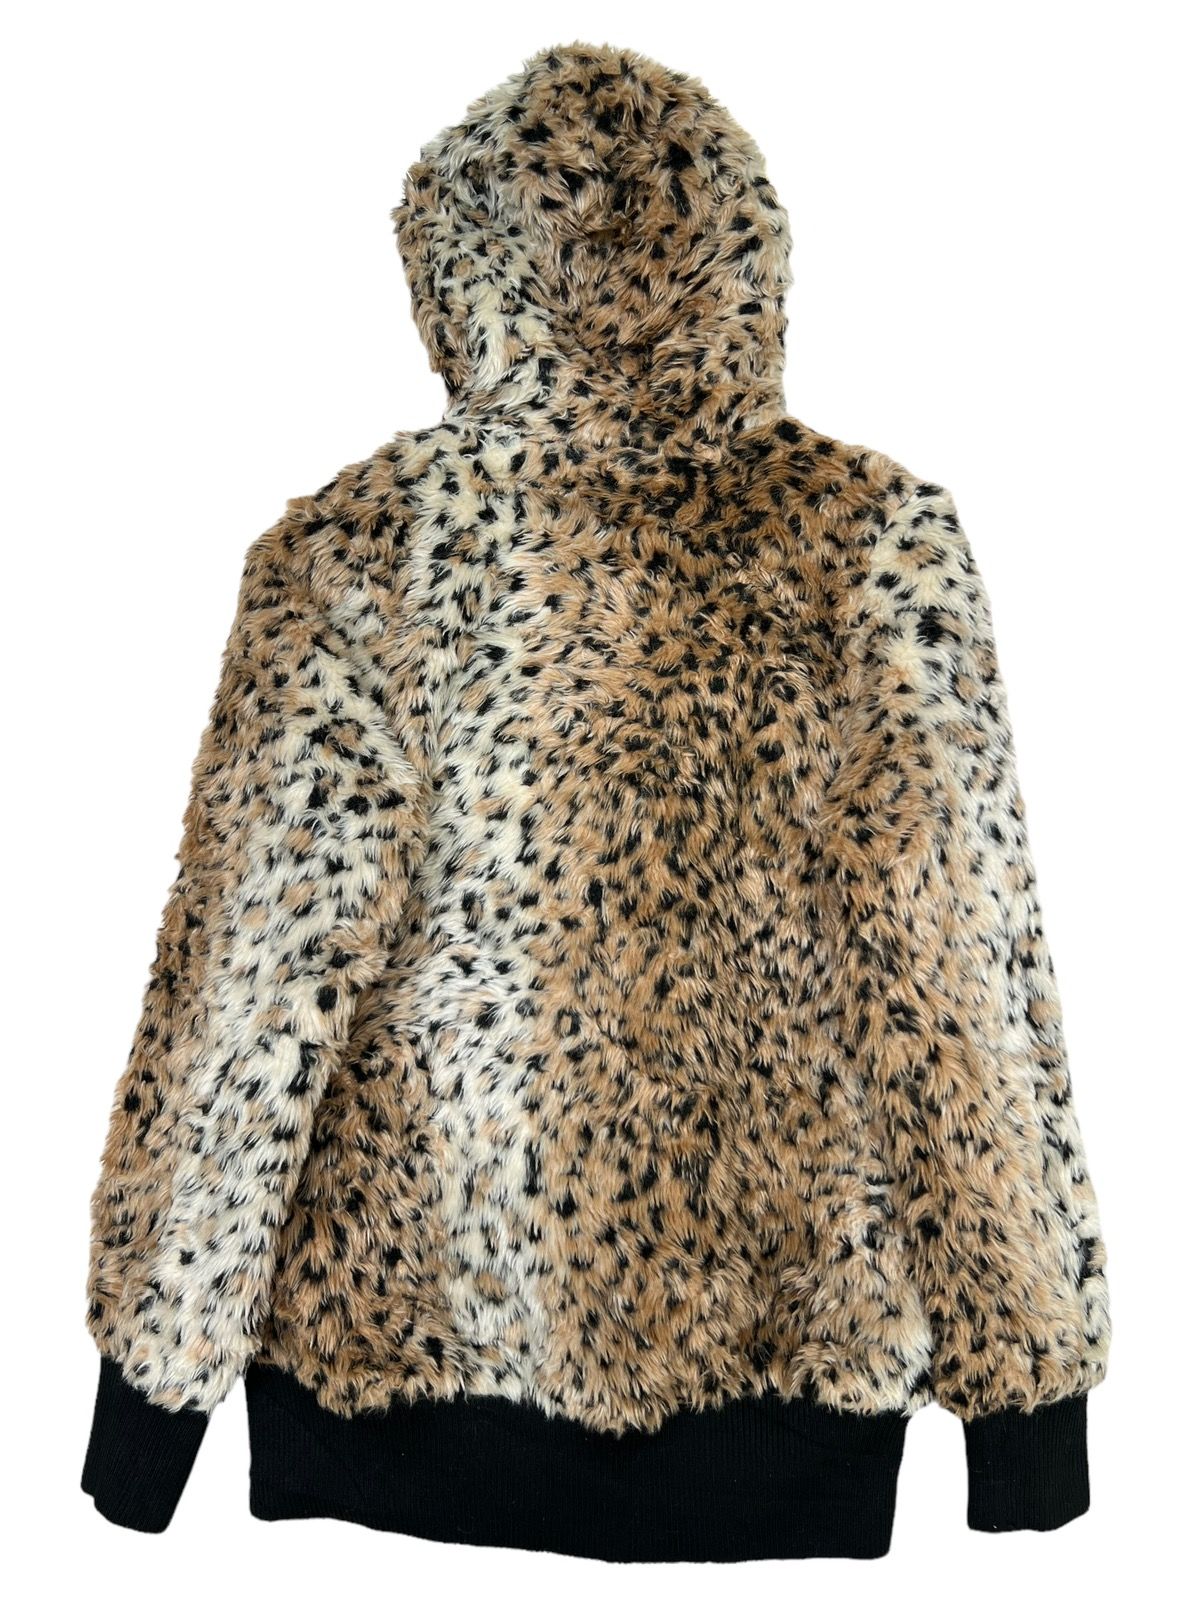 Japanese Brand - Glad News Leopard Fur Zip Up Hoodie - 2